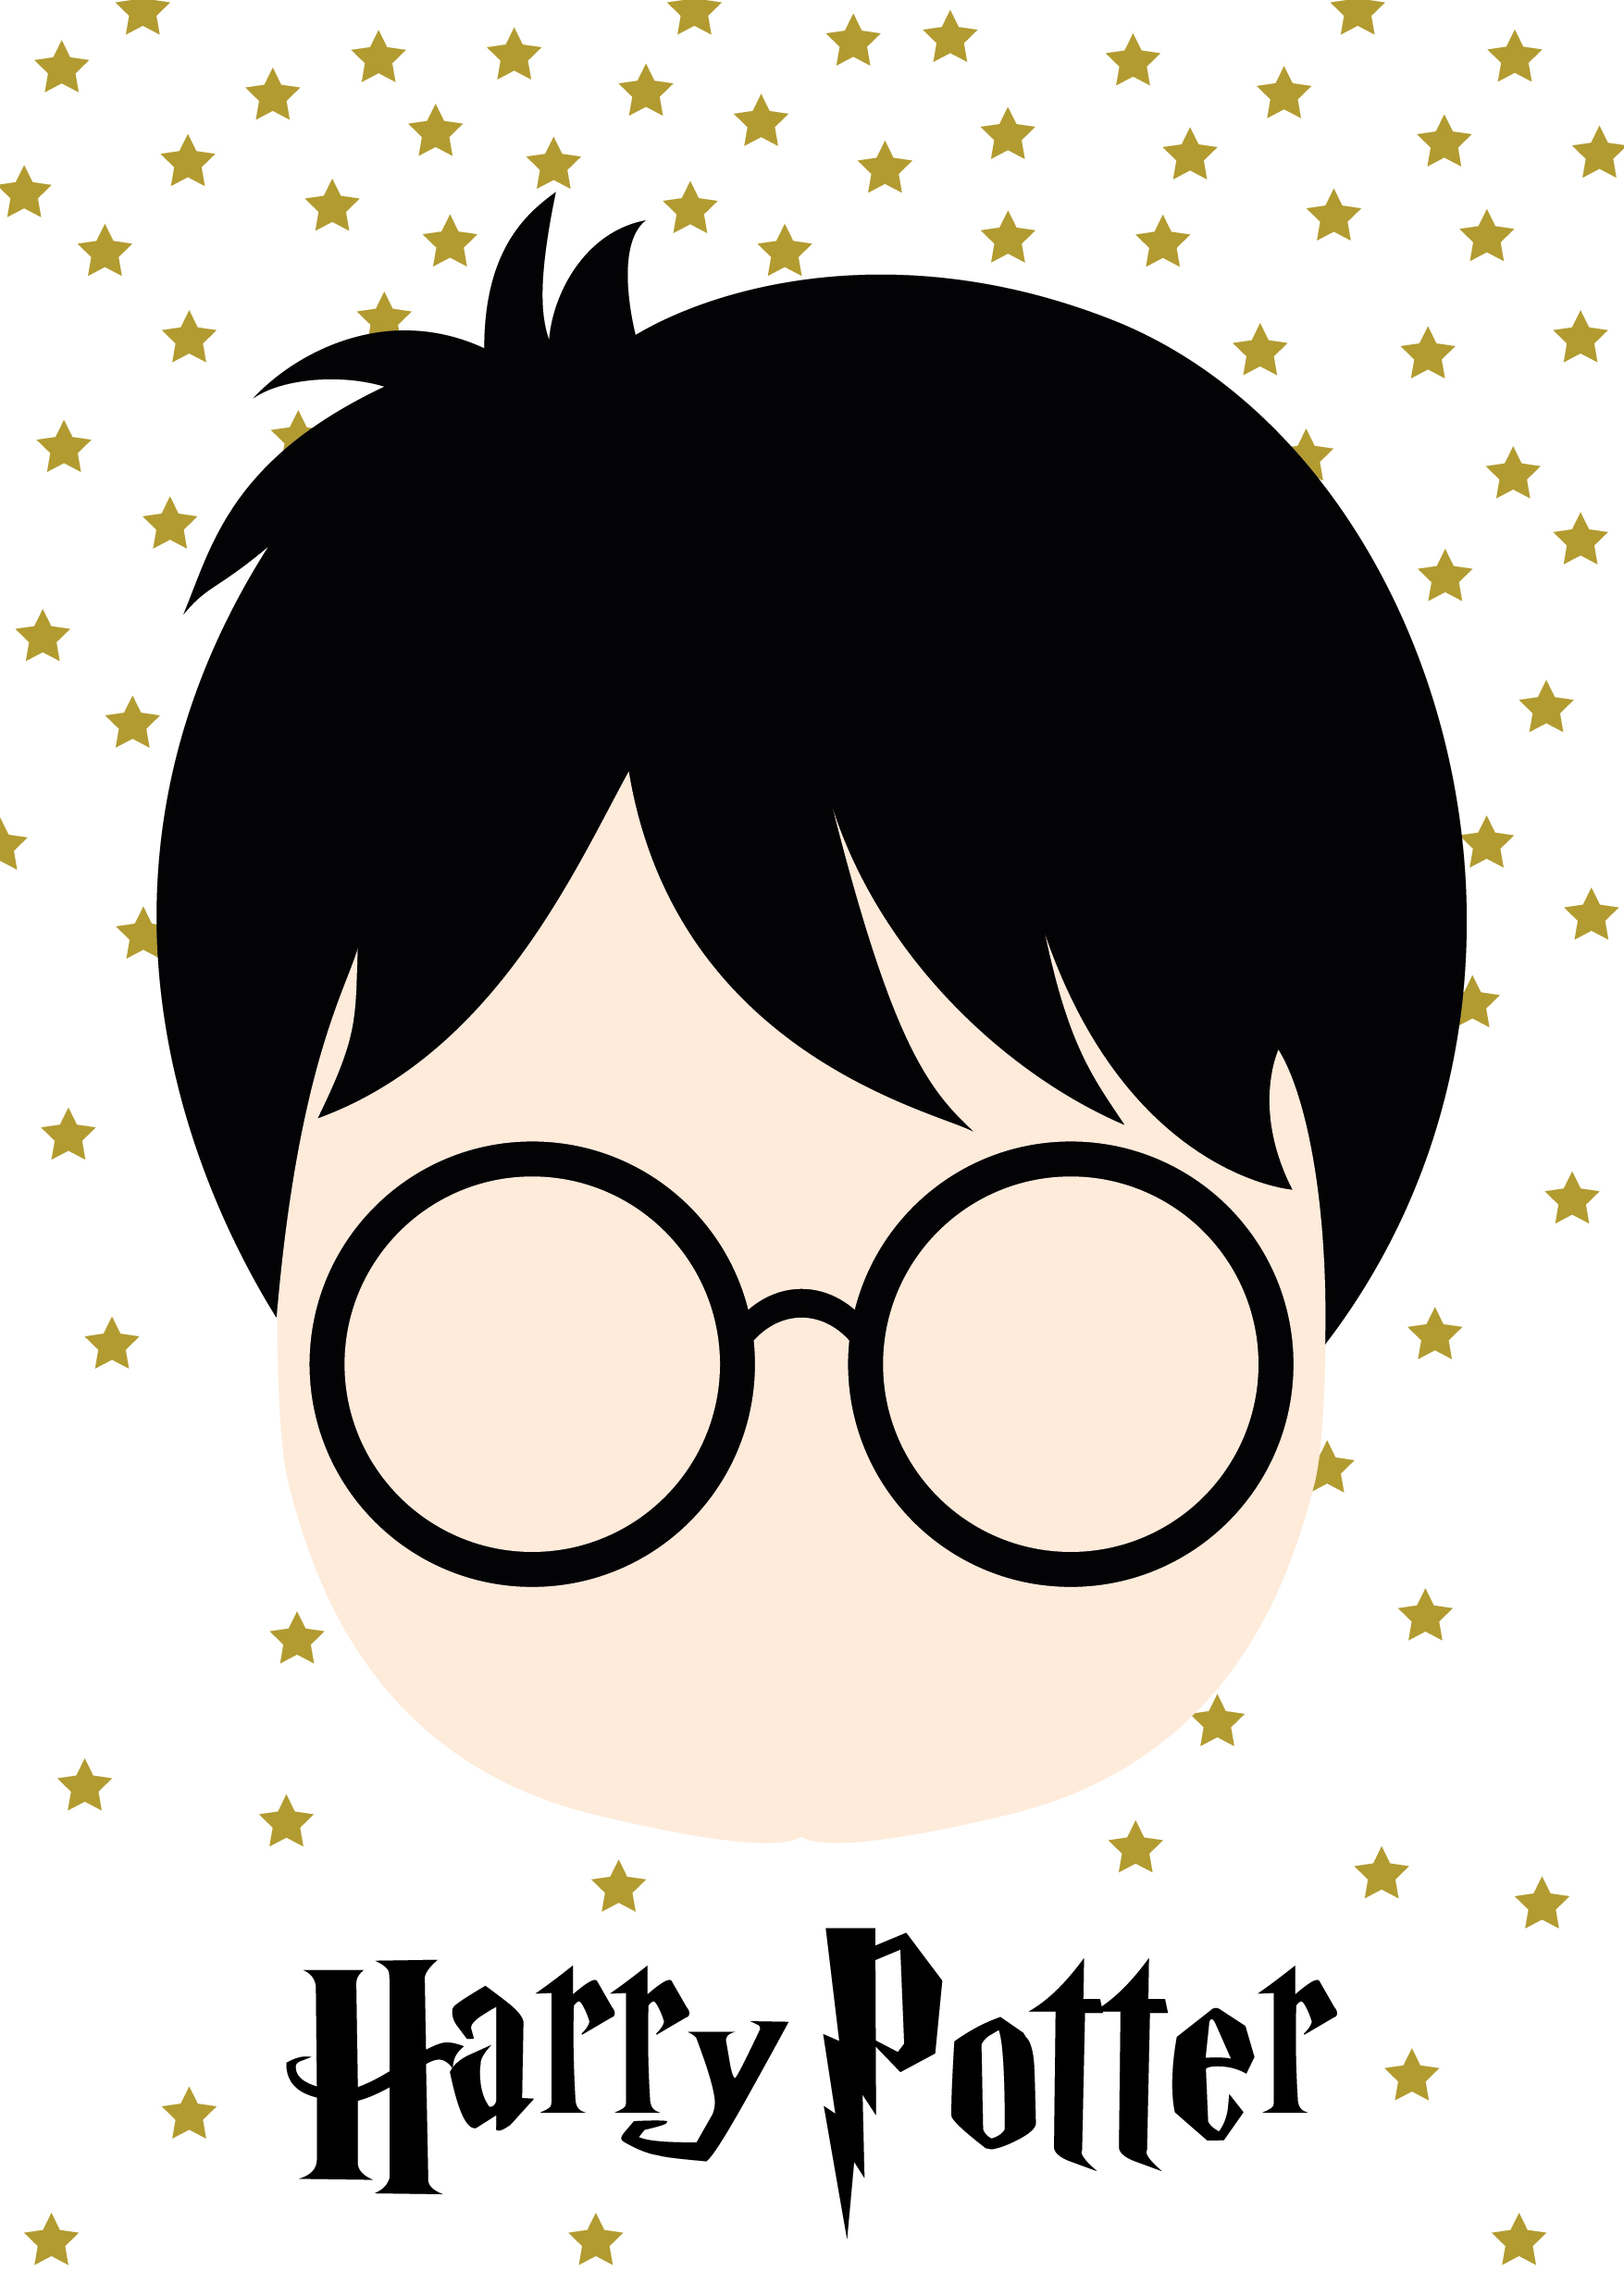 Un anniversaire Harry Potter (2ème partie) - Les créations d'Ulane